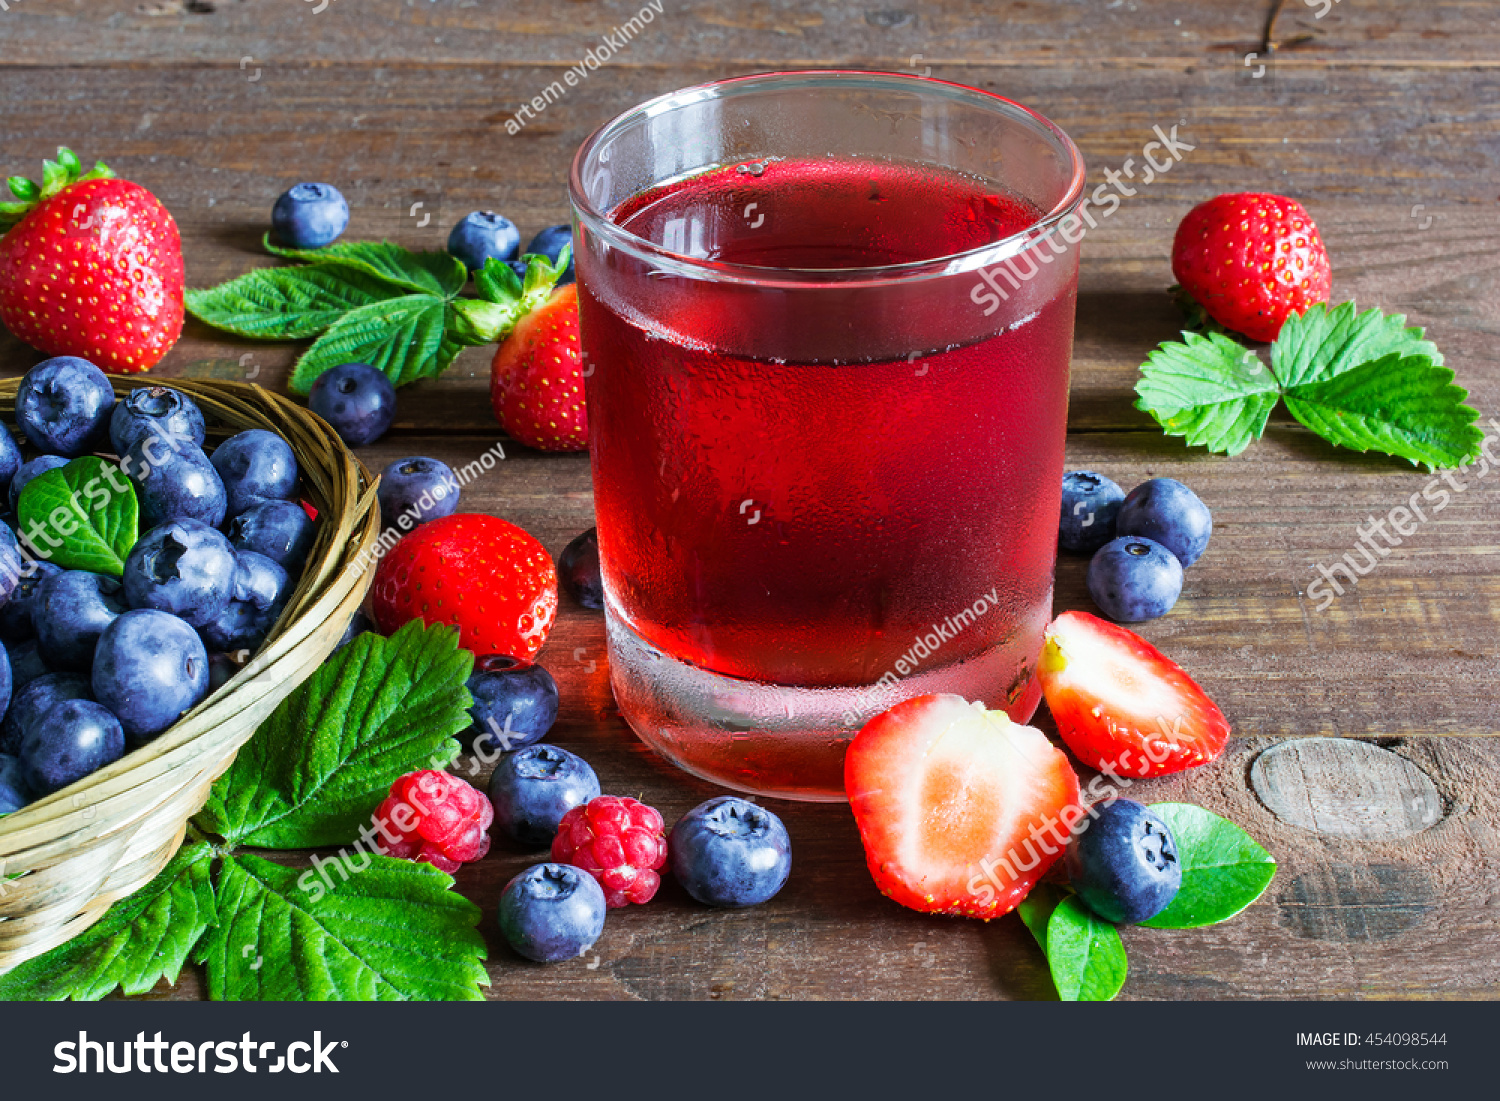 Густой напиток из ягод 5. Ягодный сок. Картинка сок из ягод. Яблоч сок с ягодами. Картинки с соками и ягодами.